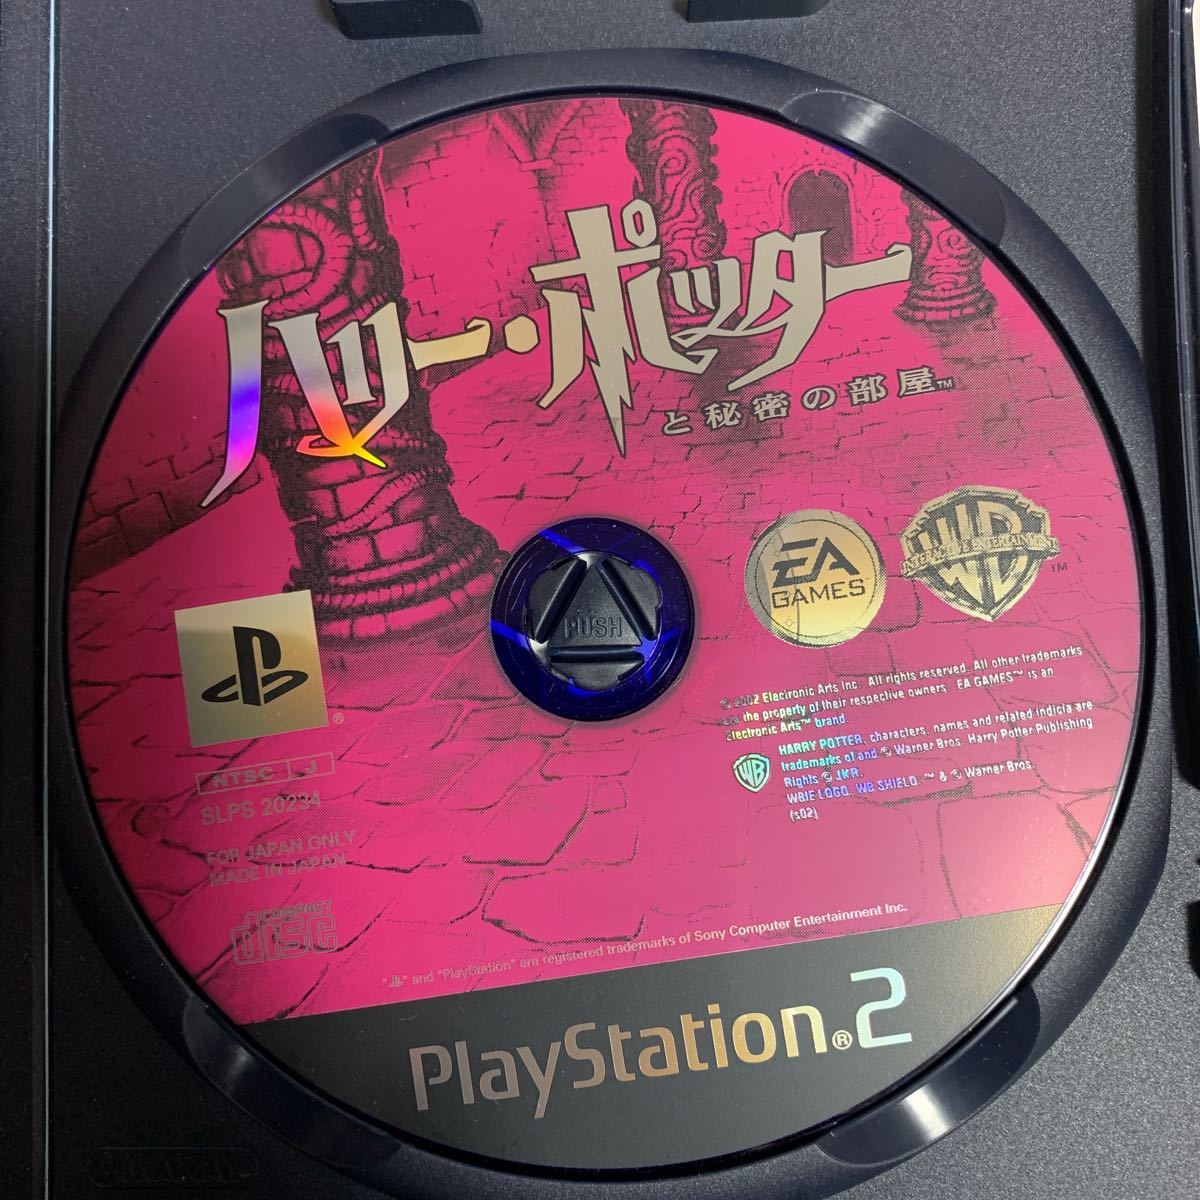 PlayStation2 ソフト【ハリーポッターと秘密の部屋】君もポッターになろう PS2ソフト